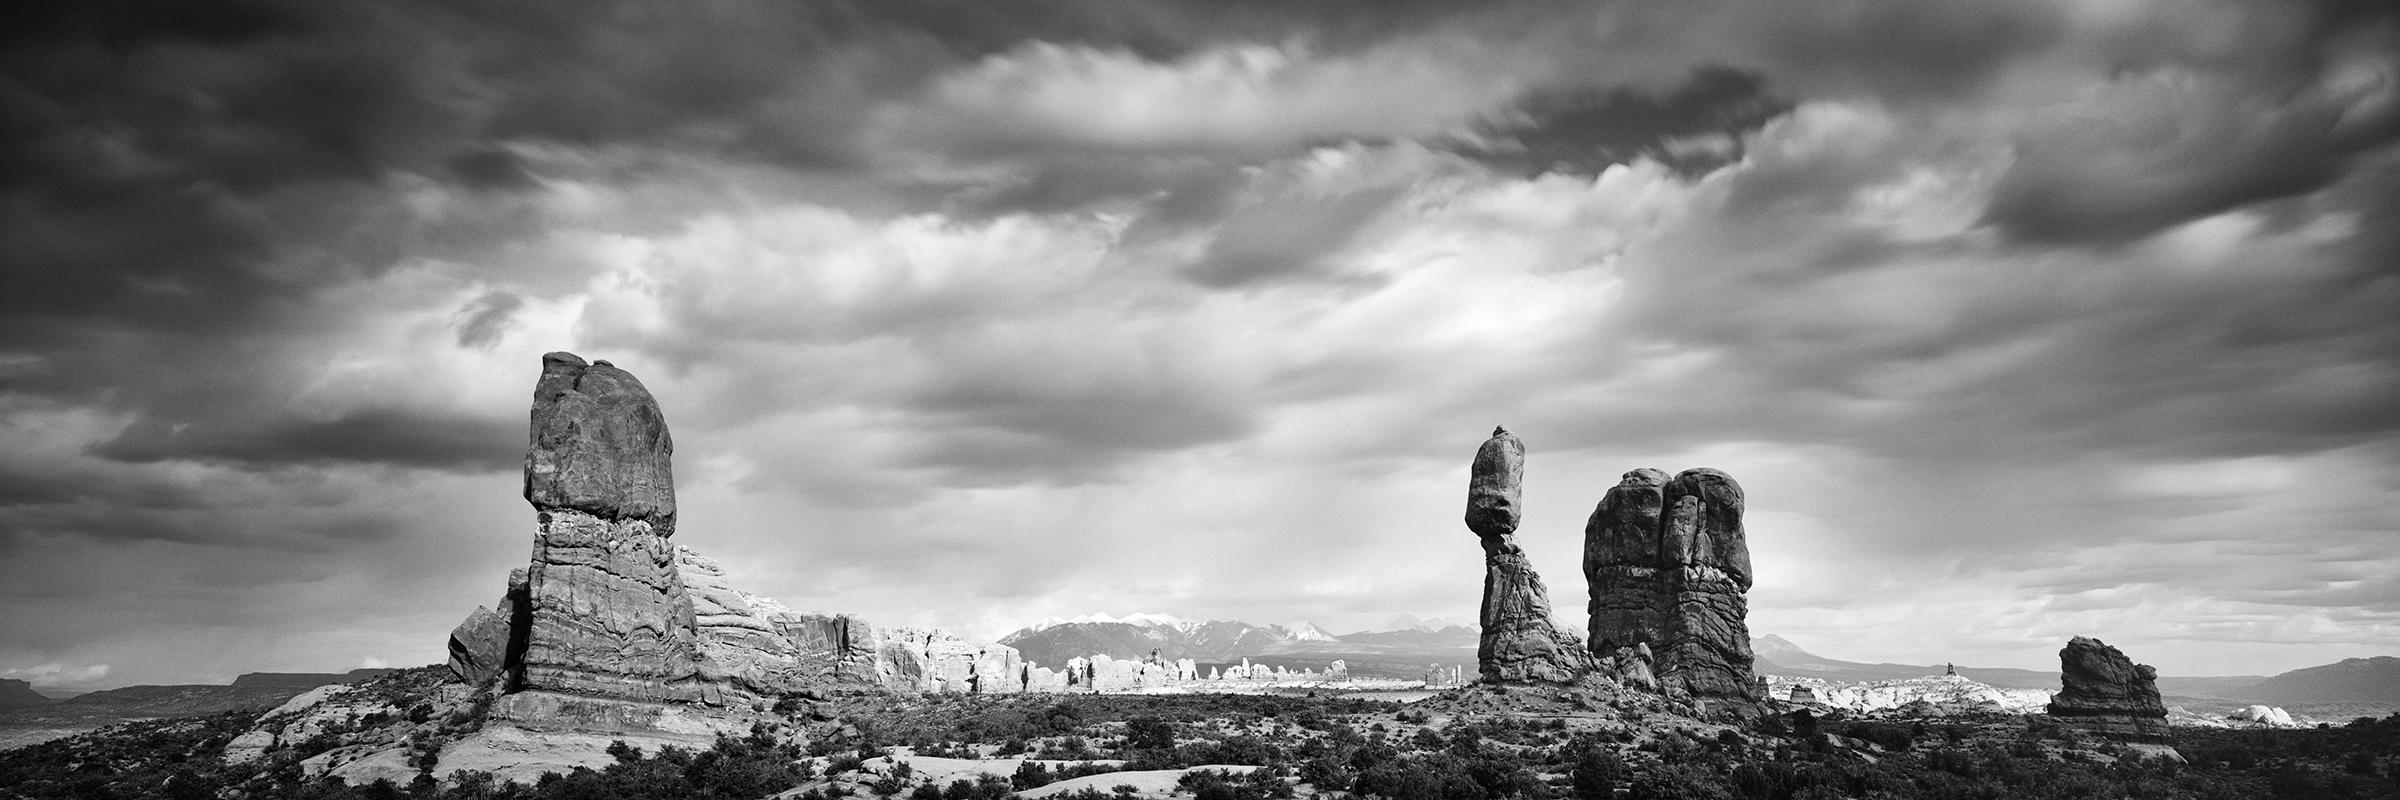 Landscape Photograph Gerald Berghammer - Wild West Panorama, parc national de l'Utah, États-Unis, photographie de paysage en noir et blanc